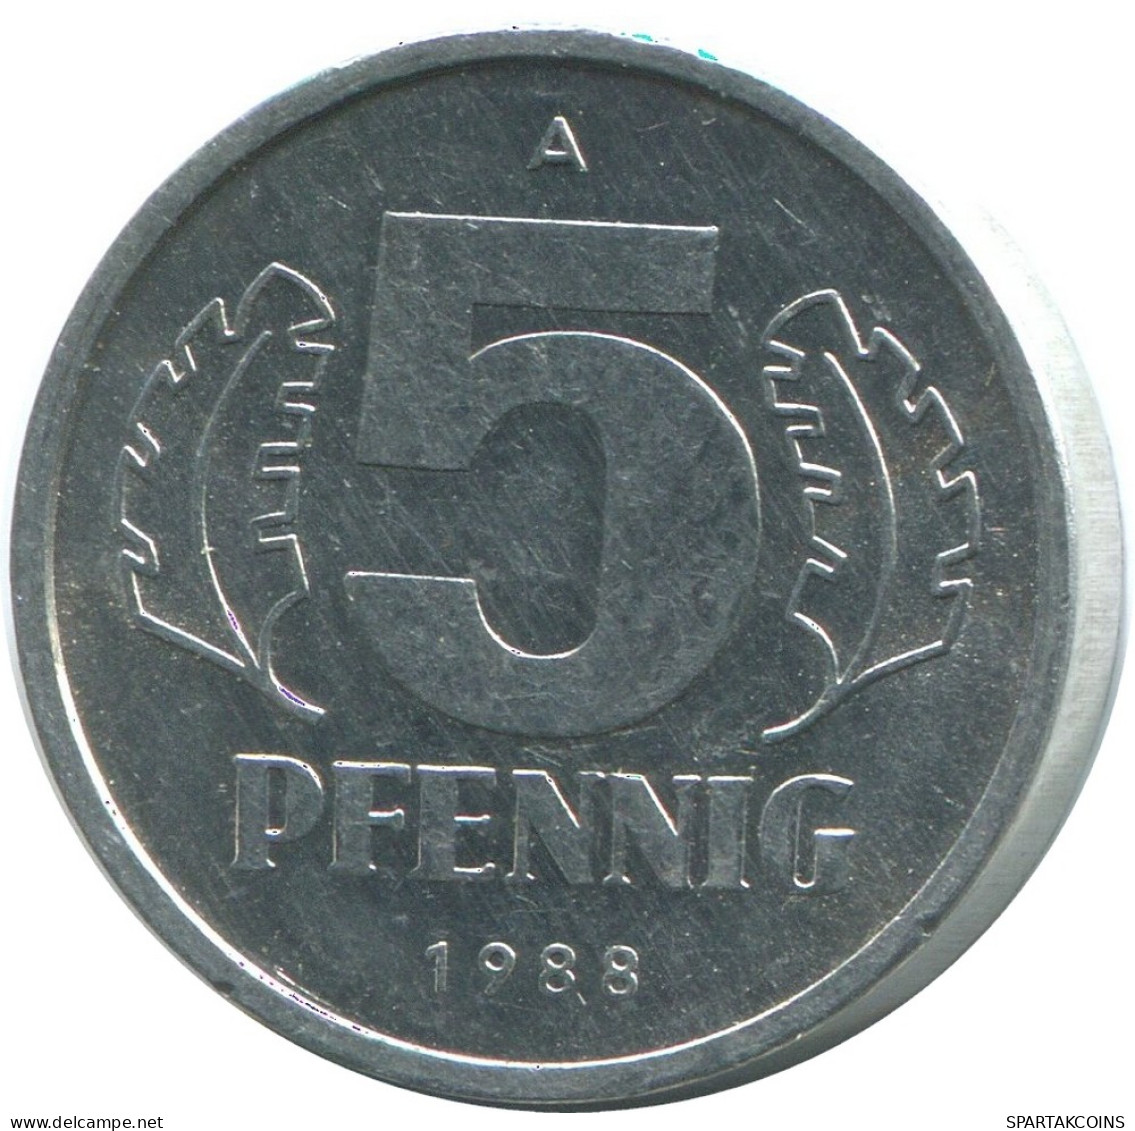 5 PFENNIG 1988 A DDR EAST GERMANY Coin #AE002.U - 5 Pfennig